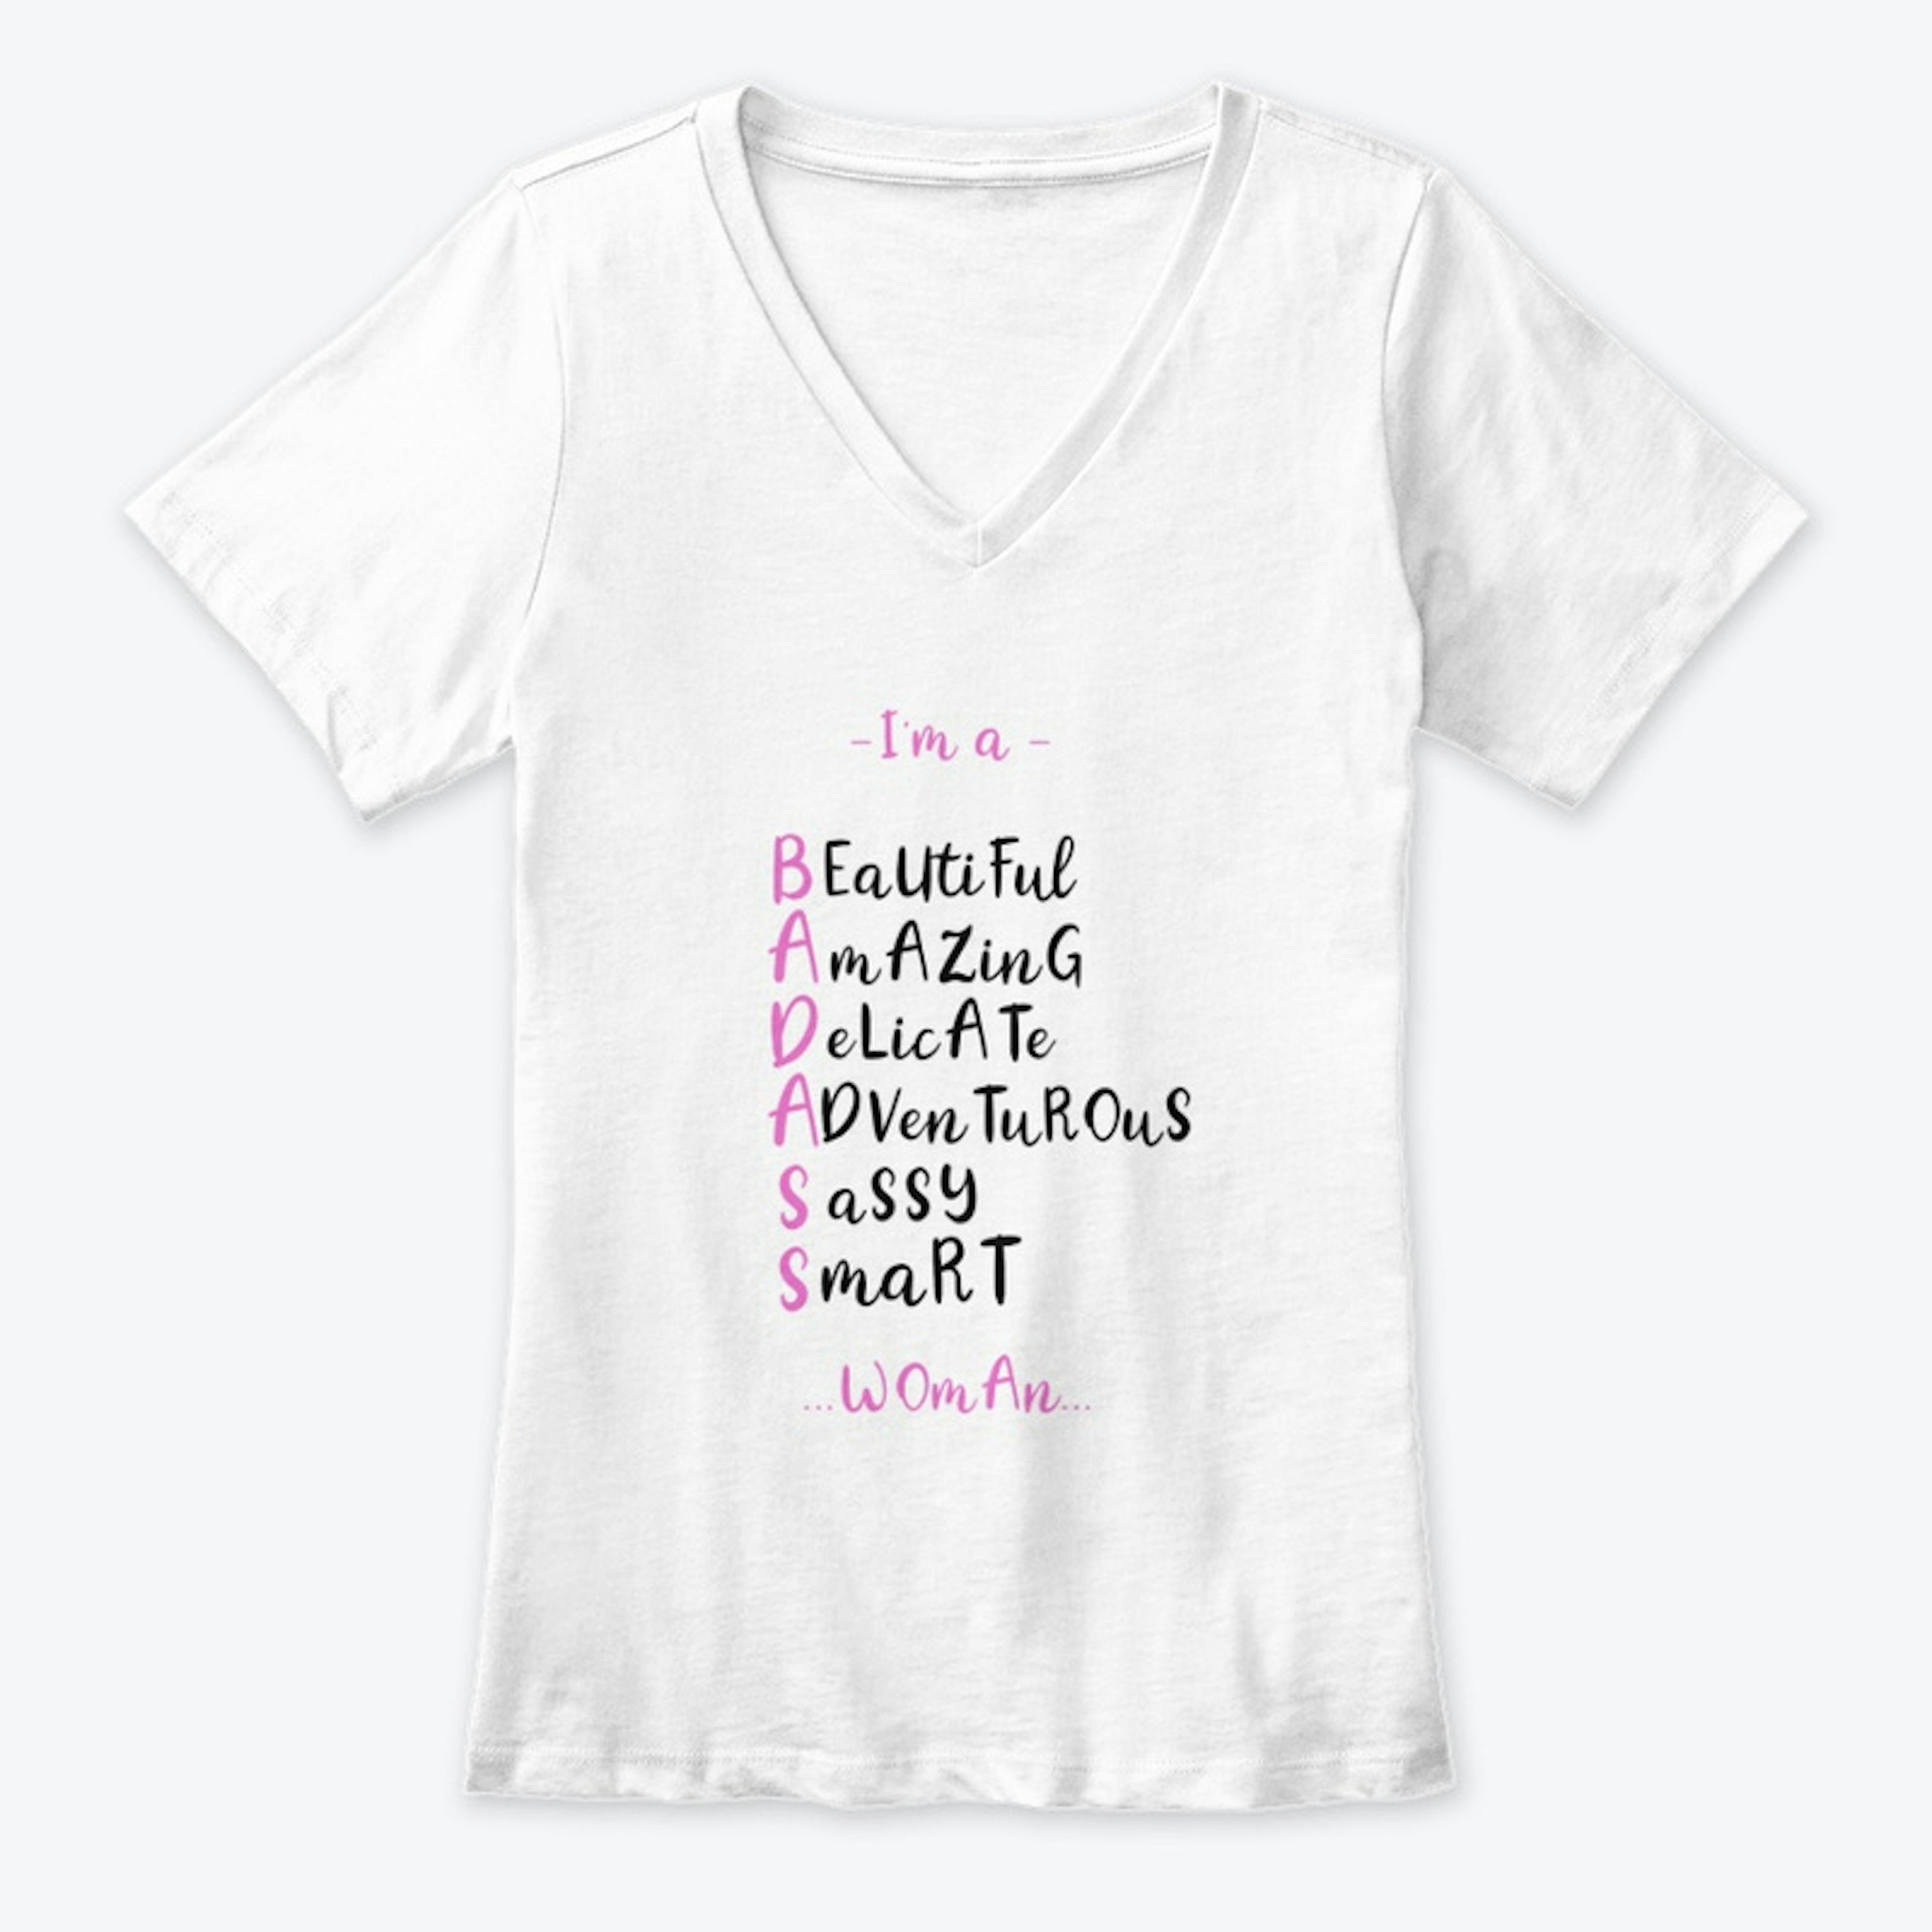 I'm a BADASS Woman | Selflove shirt